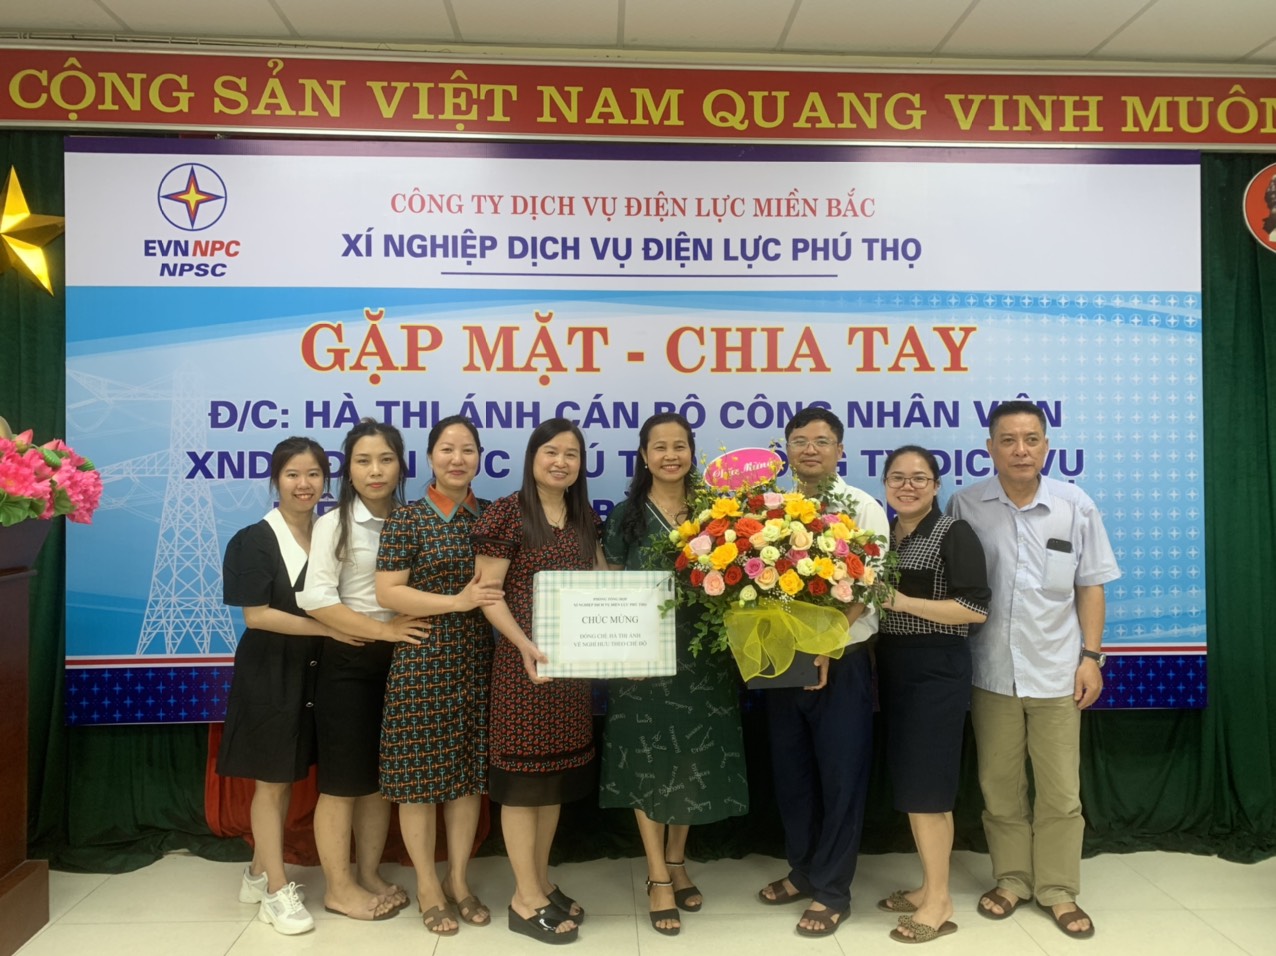 Xí nghiệp Dịch vụ Điện lực Phú Thọ gặp mặt, chia tay đồng chí Hà Thị Ánh nghỉ hưu theo chế độ